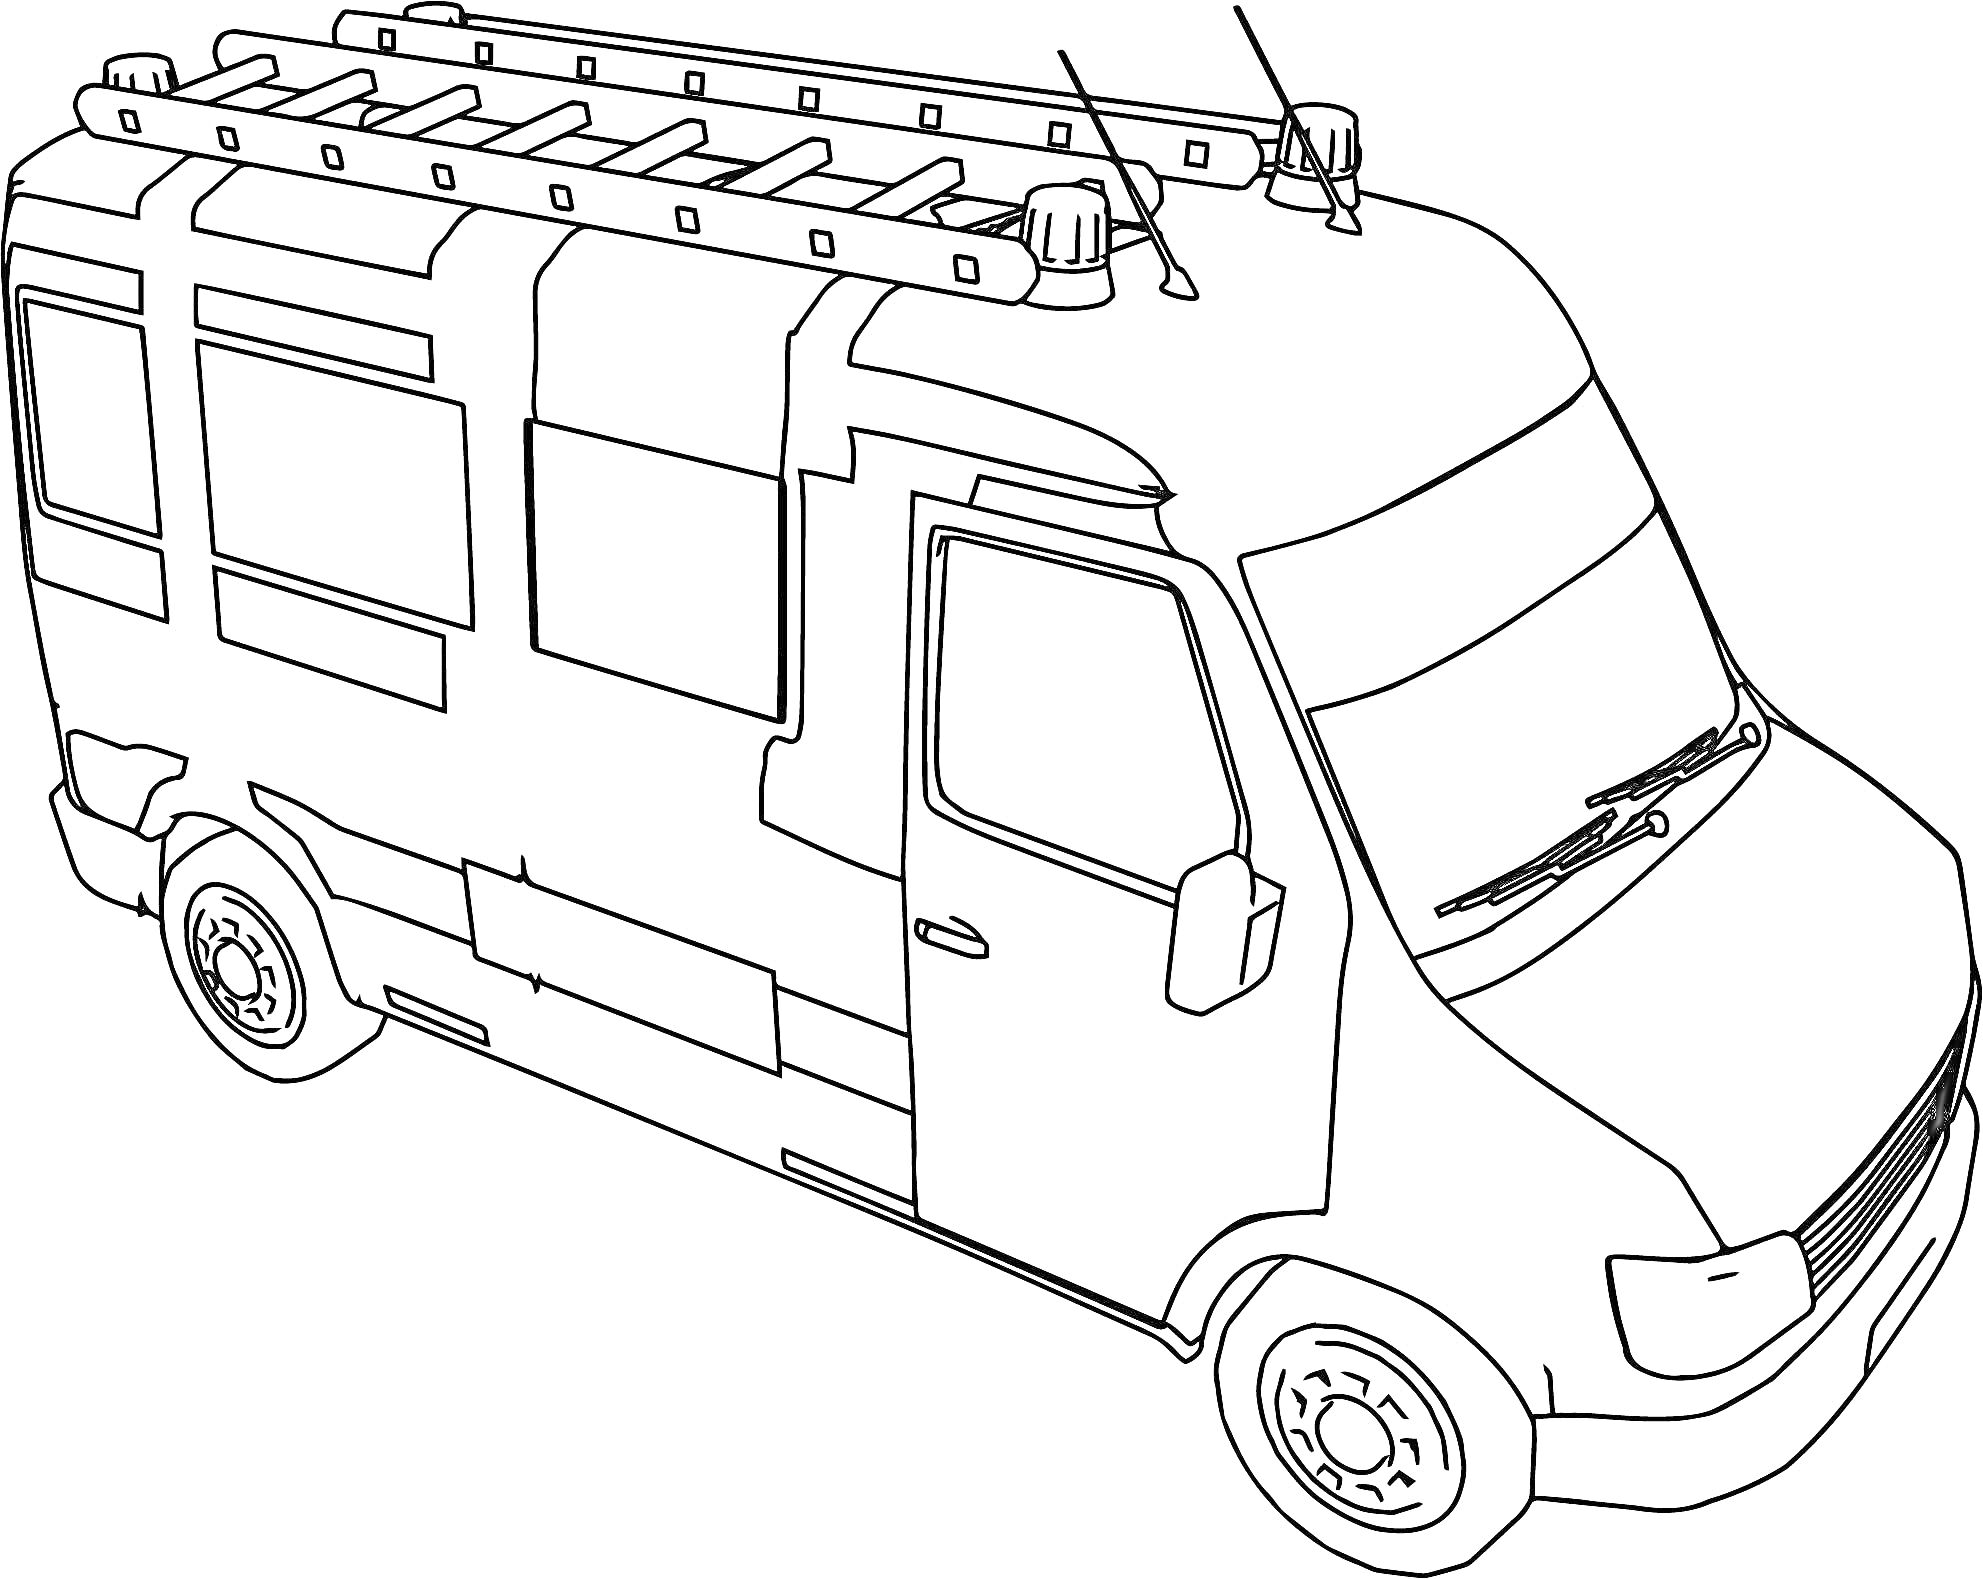 РаскраскаФургон с багажником на крыше, окнами, дверью, колесами, антеннами и дворниками